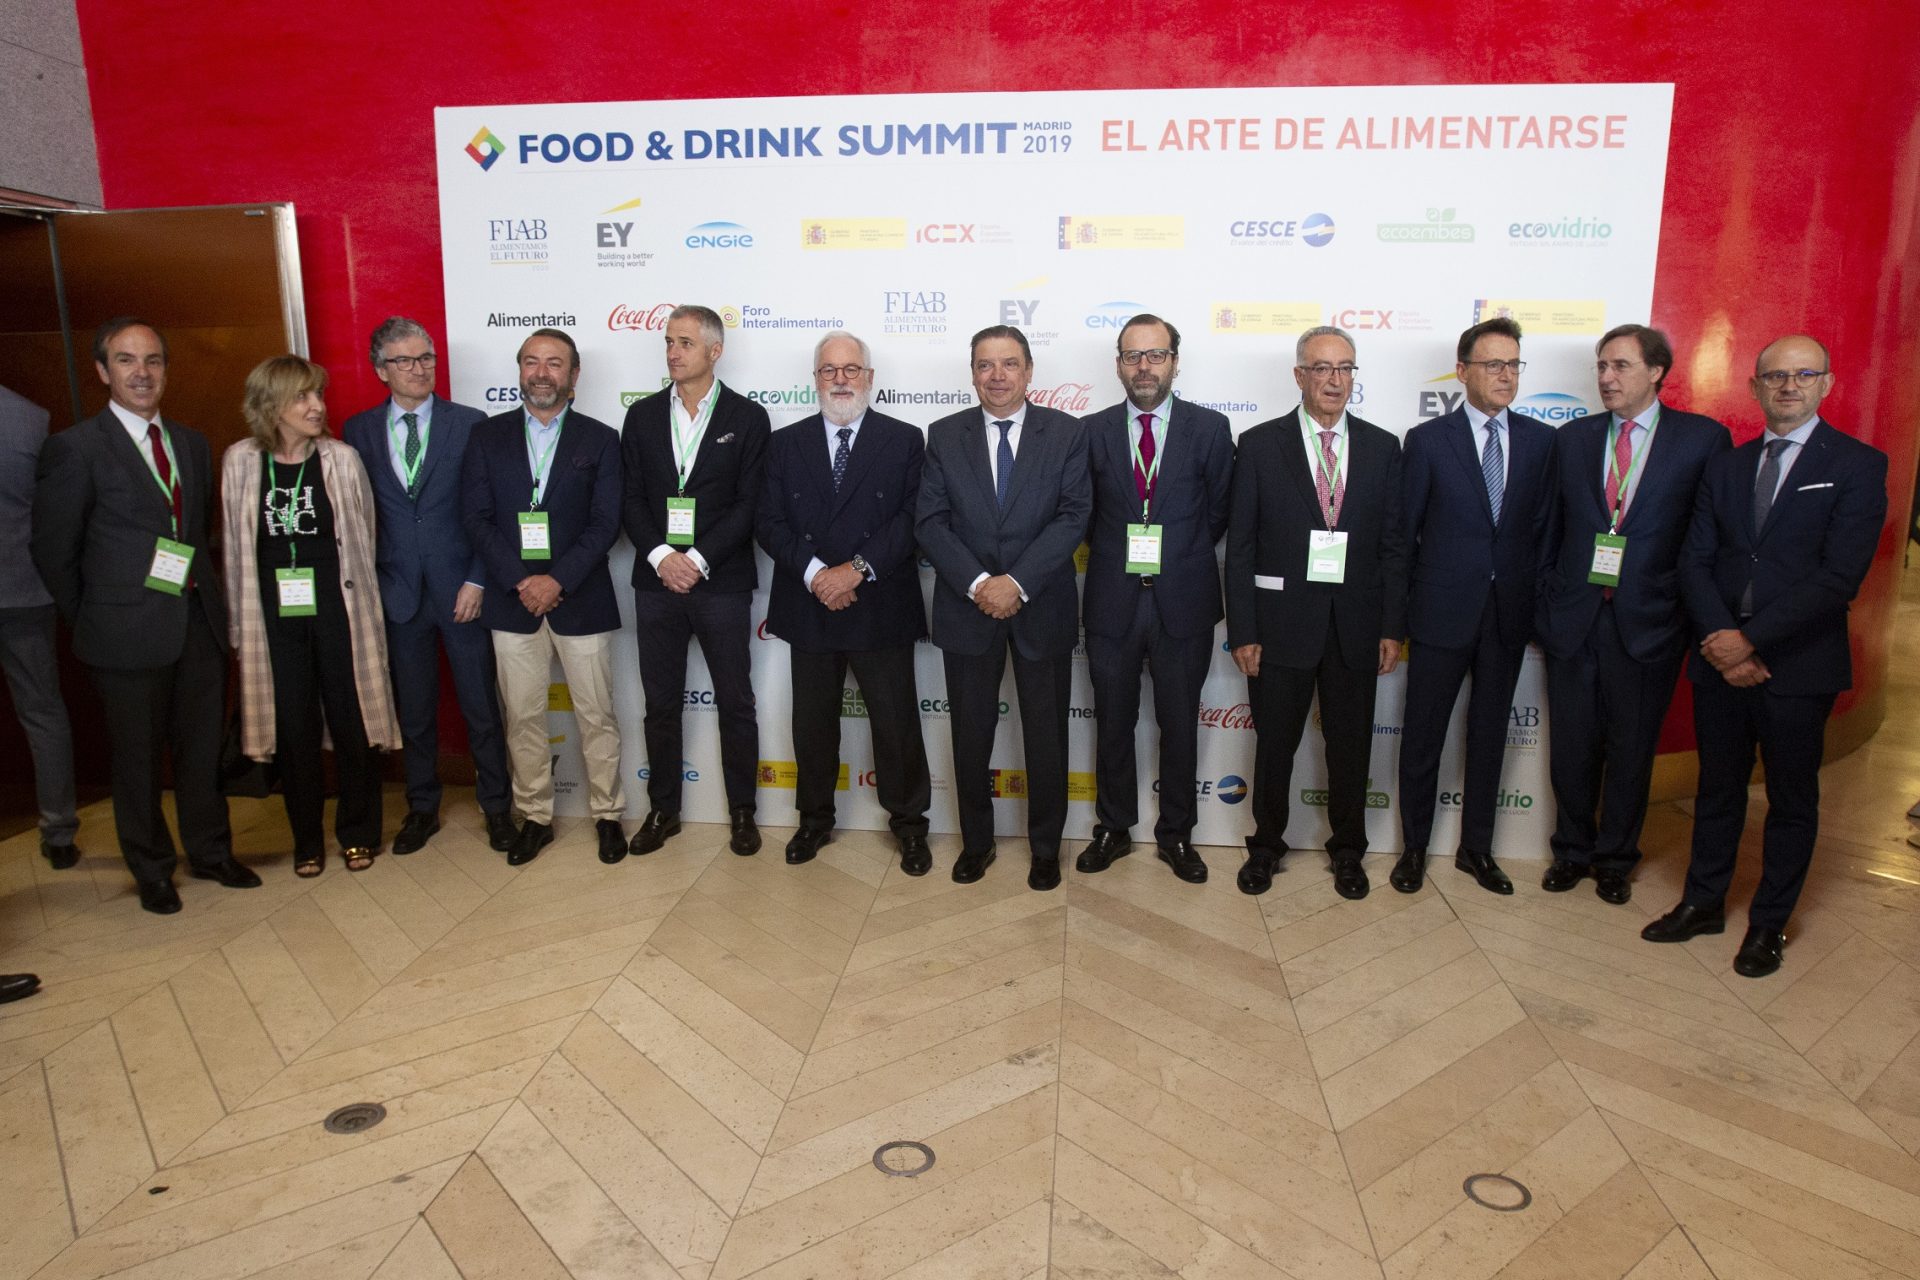 Inauguración del foro Food&Drink Summit. EFEAGRO/Javier Liaño.